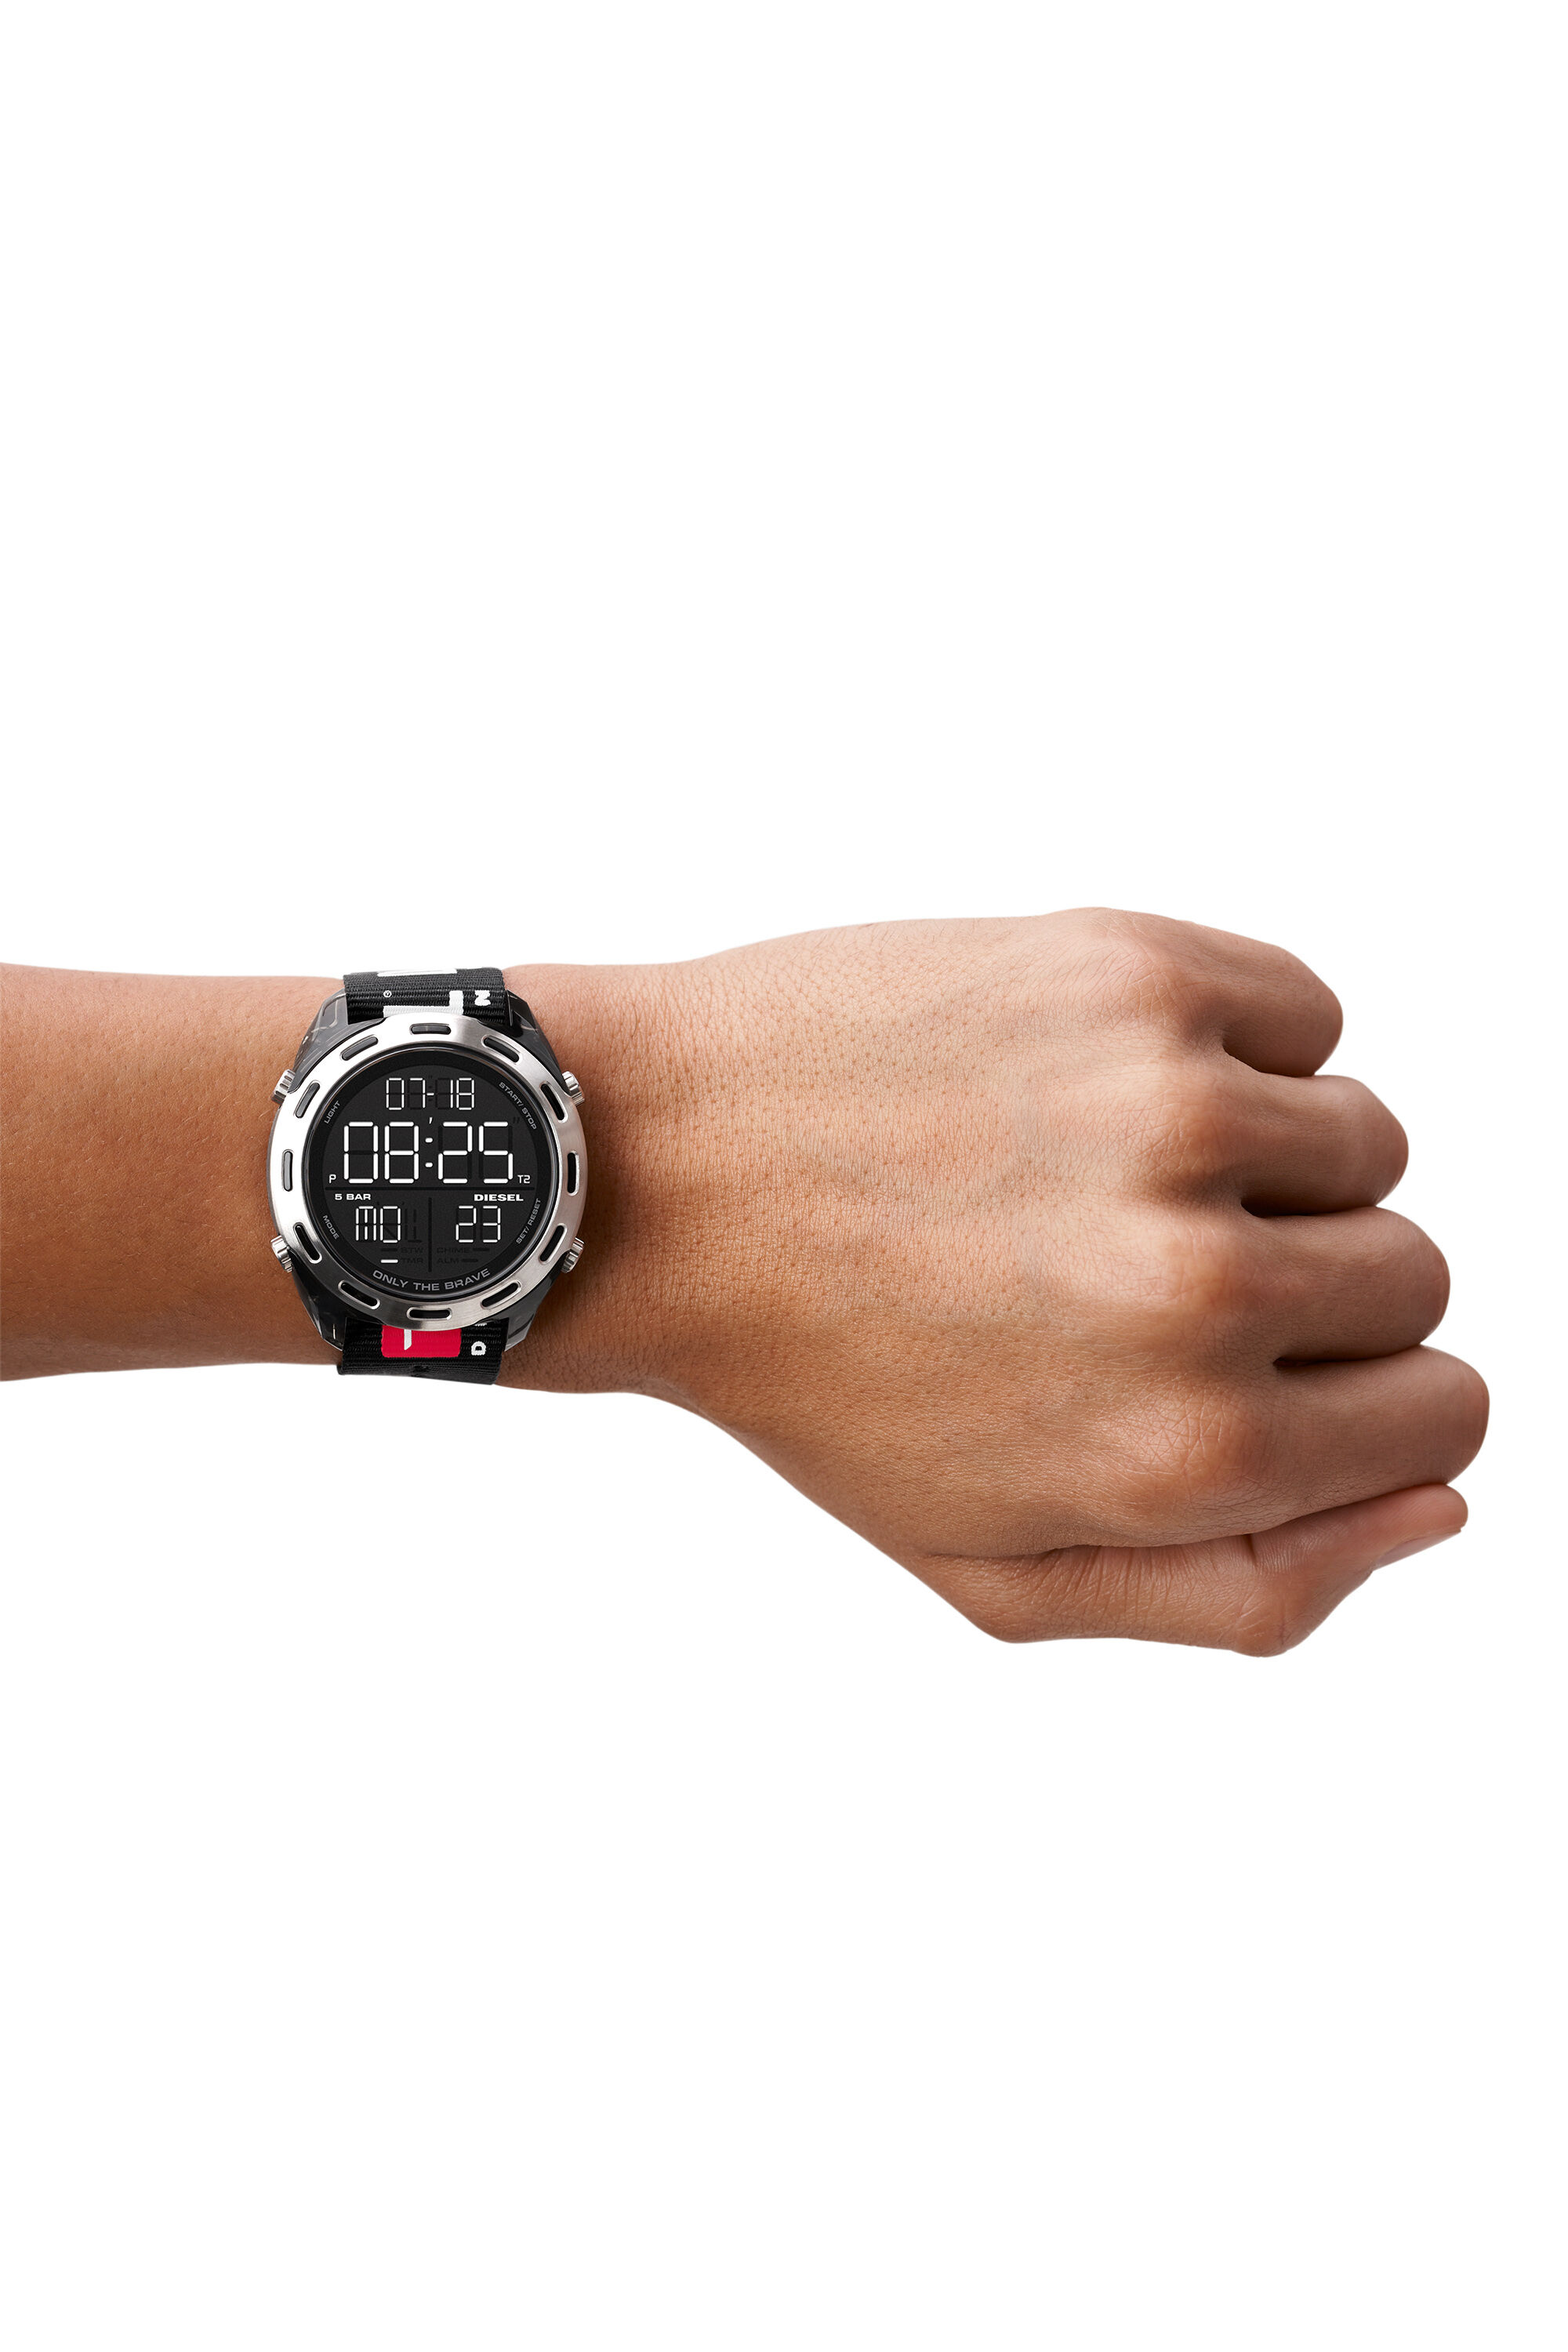 新品✨ディーゼル DIESEL 腕時計 メンズ DZ1914 クォーツ ブラック